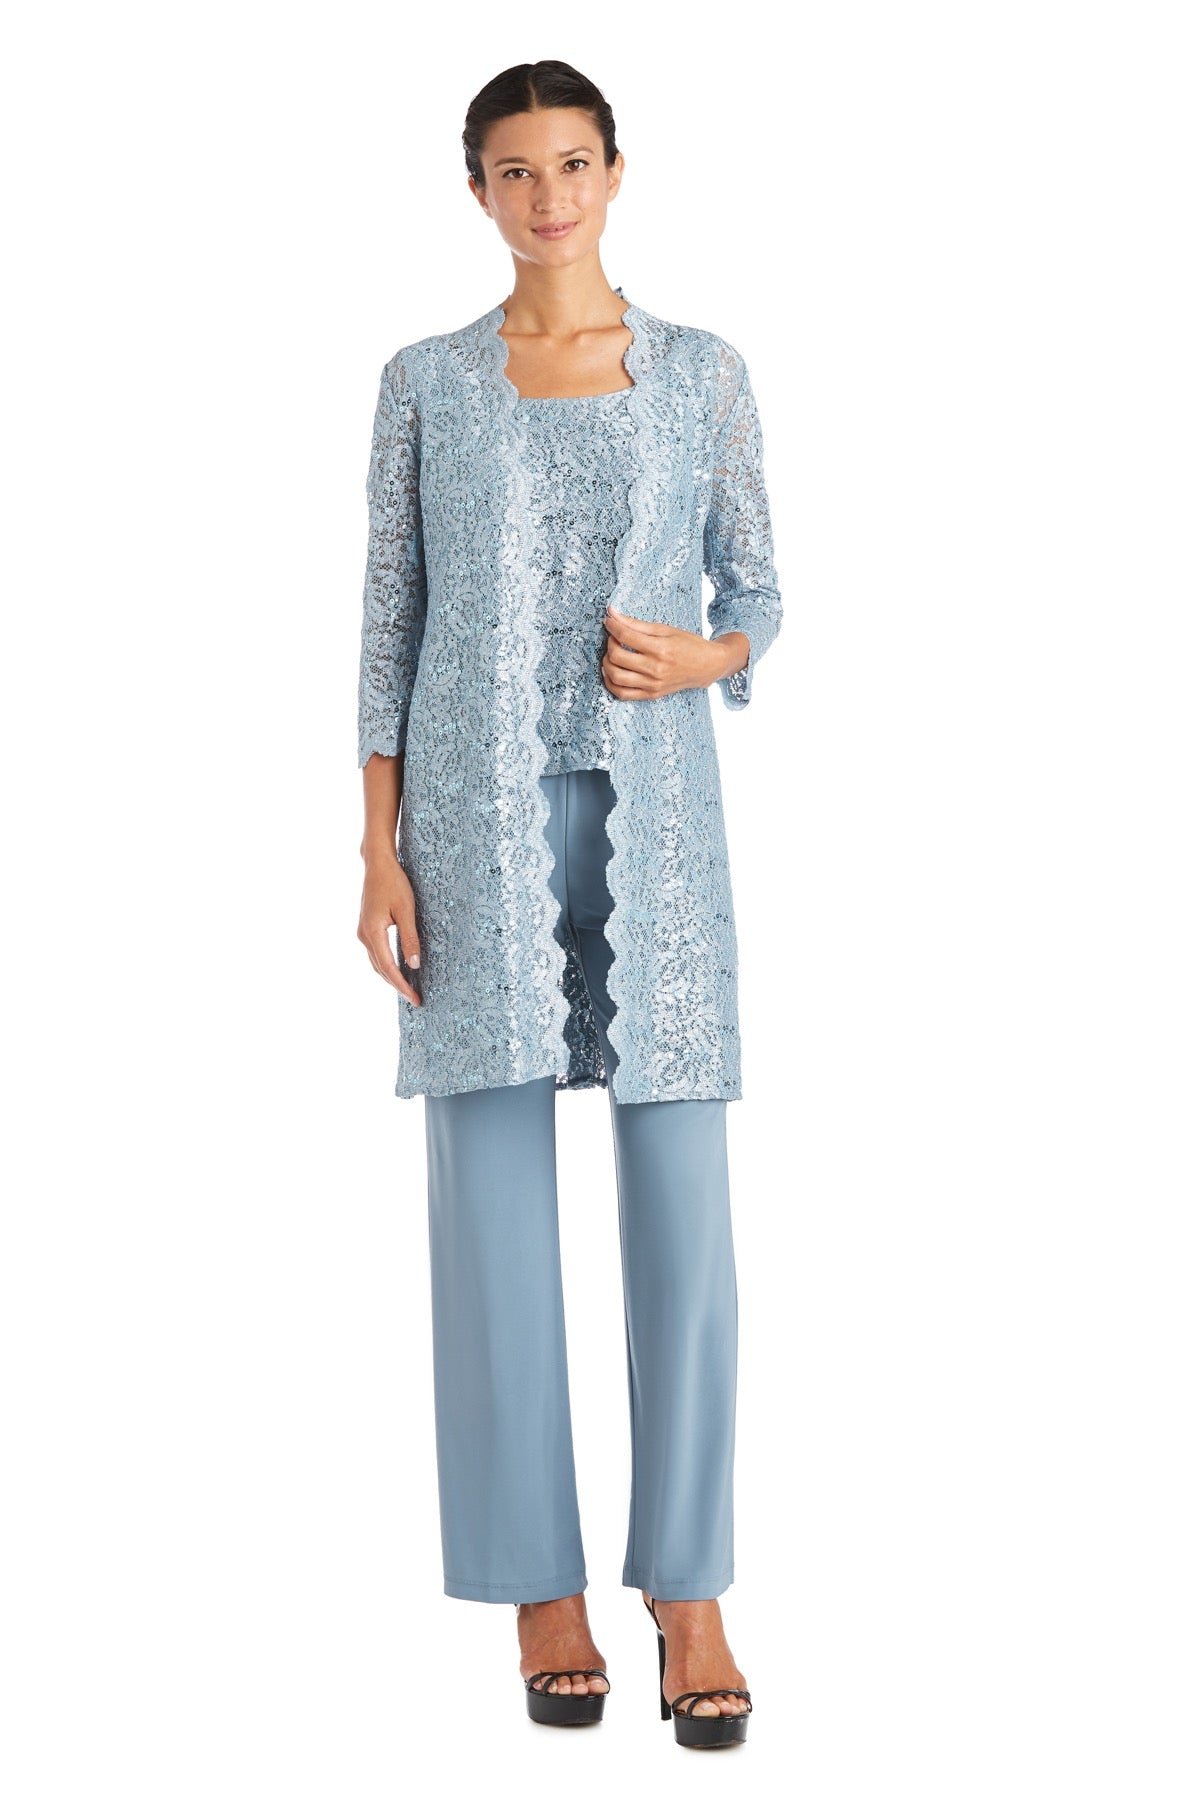 Women's 3 Piece Scalloped Sequin Lace Pant Suit - Mother of the bride pantsuit